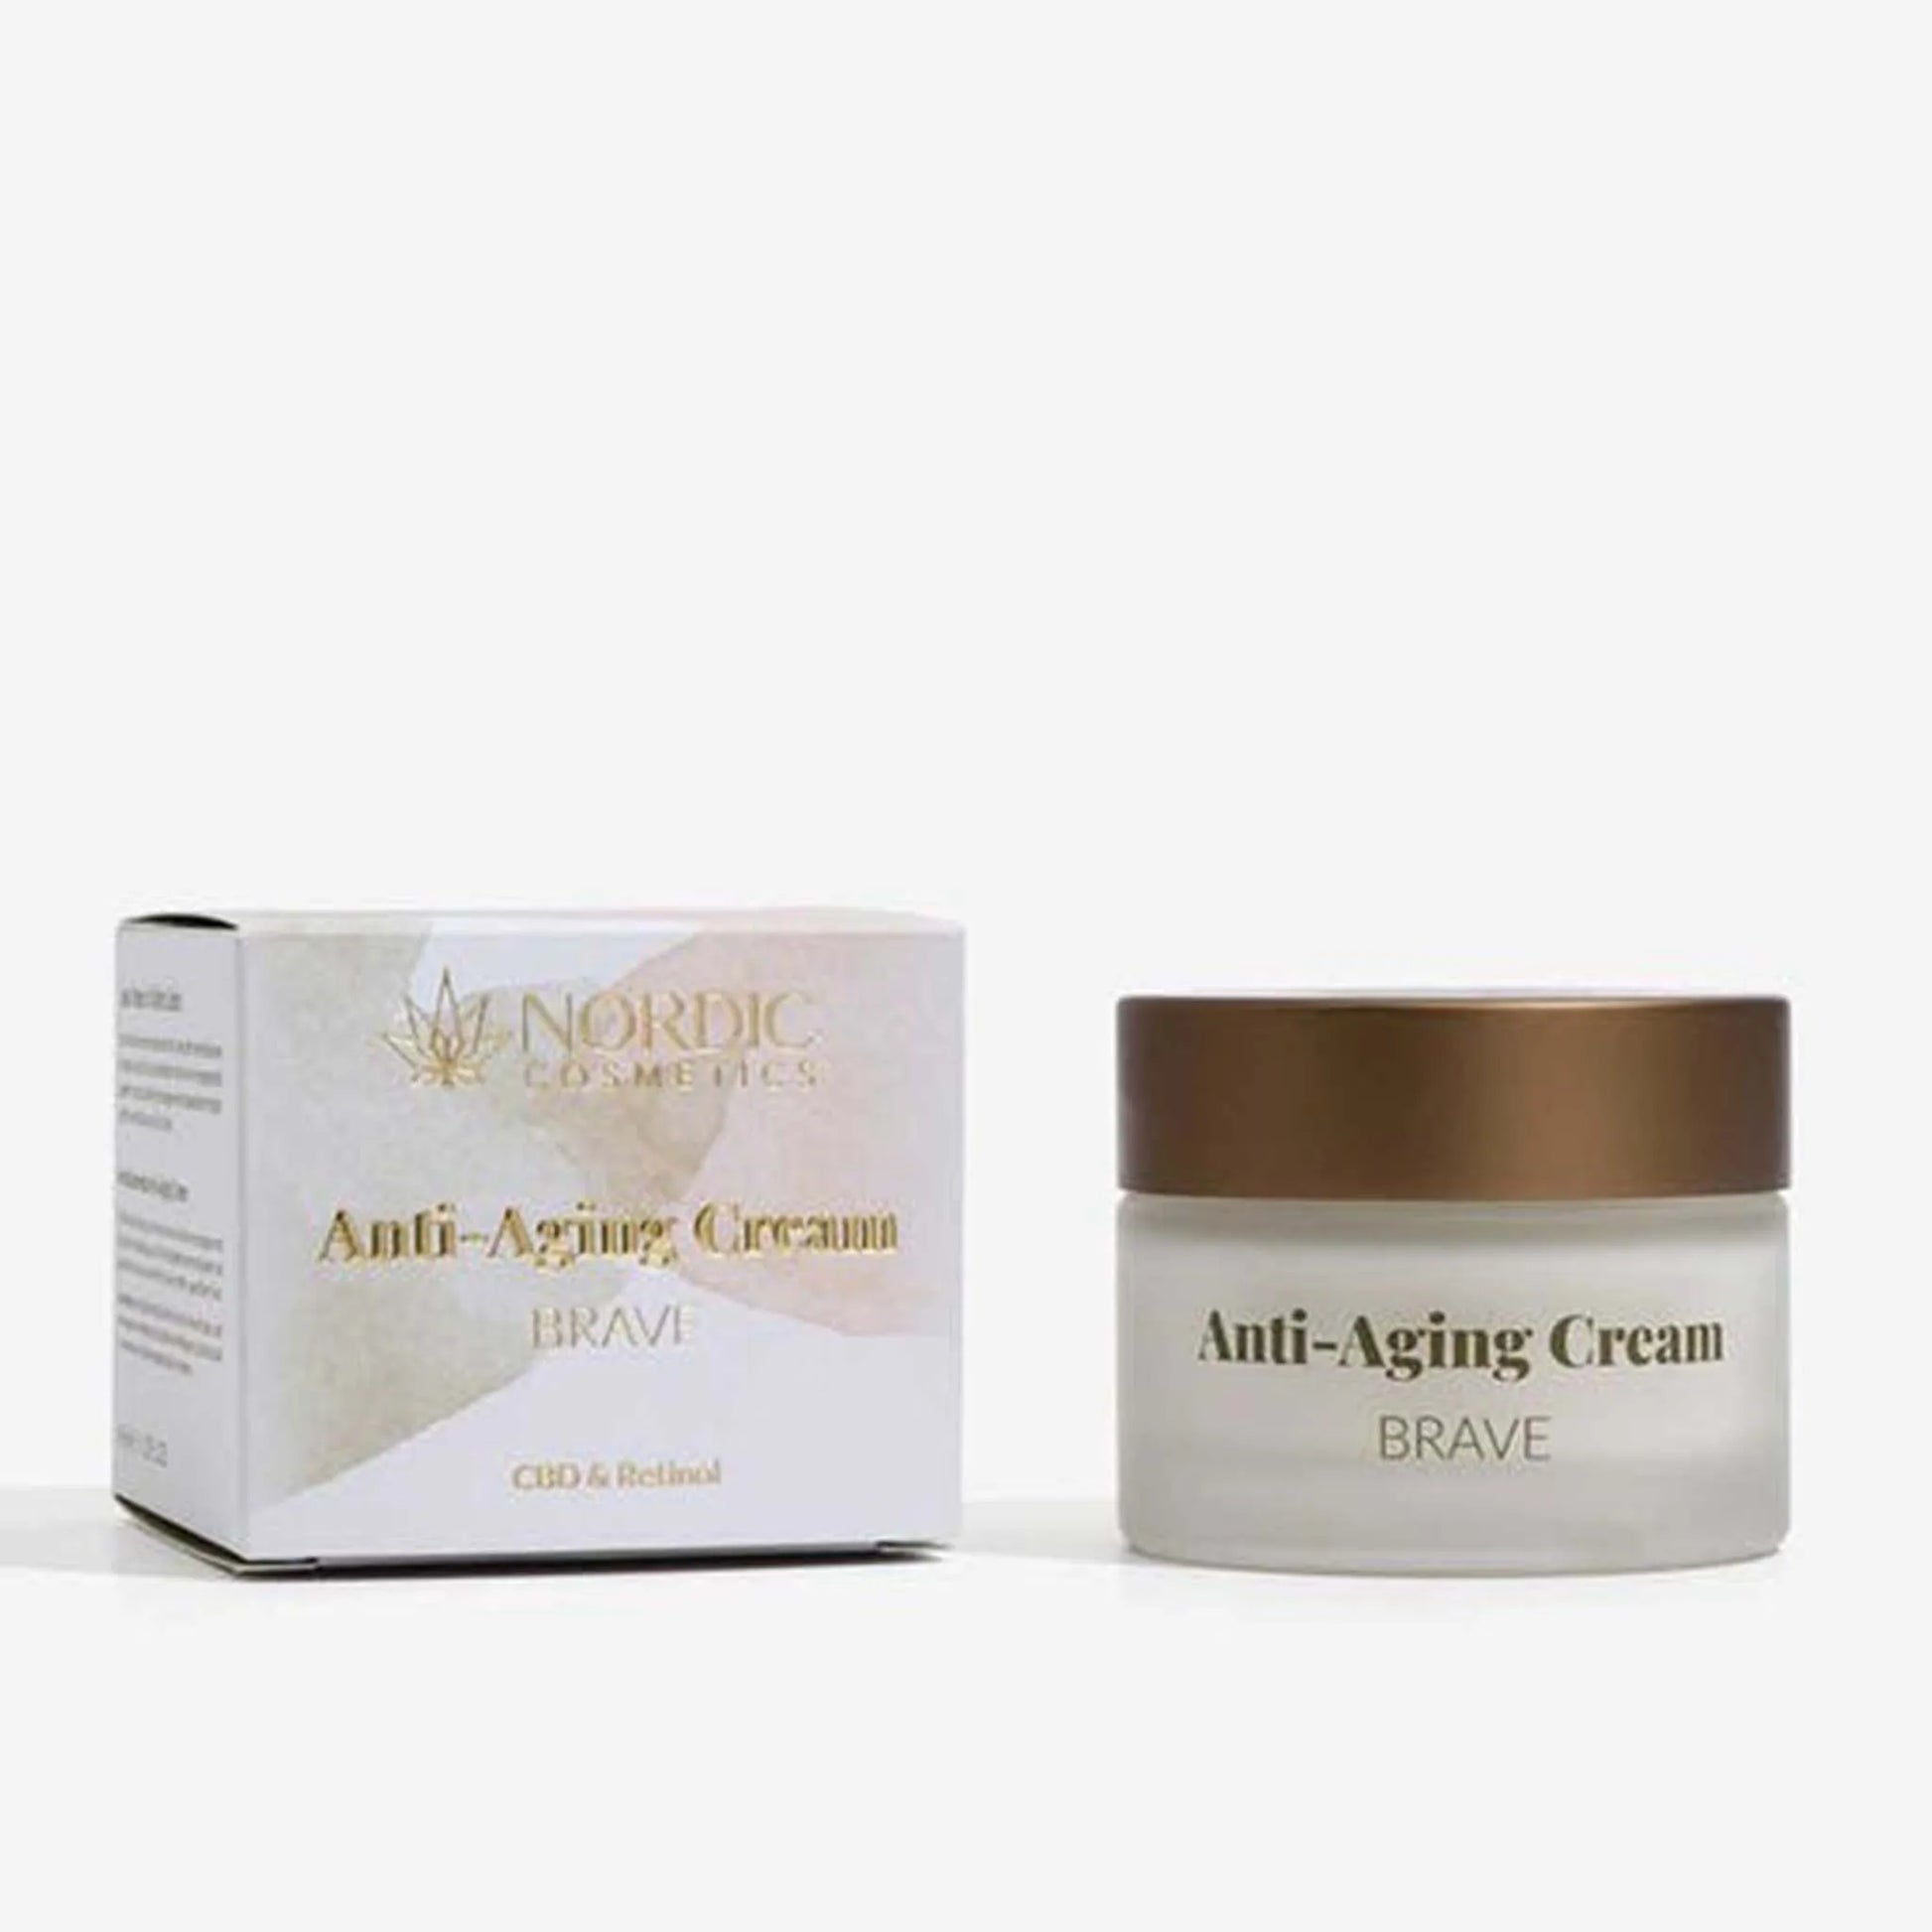 La caja y el envase de la Crema Facial Antiarrugas - CBD y Retinol